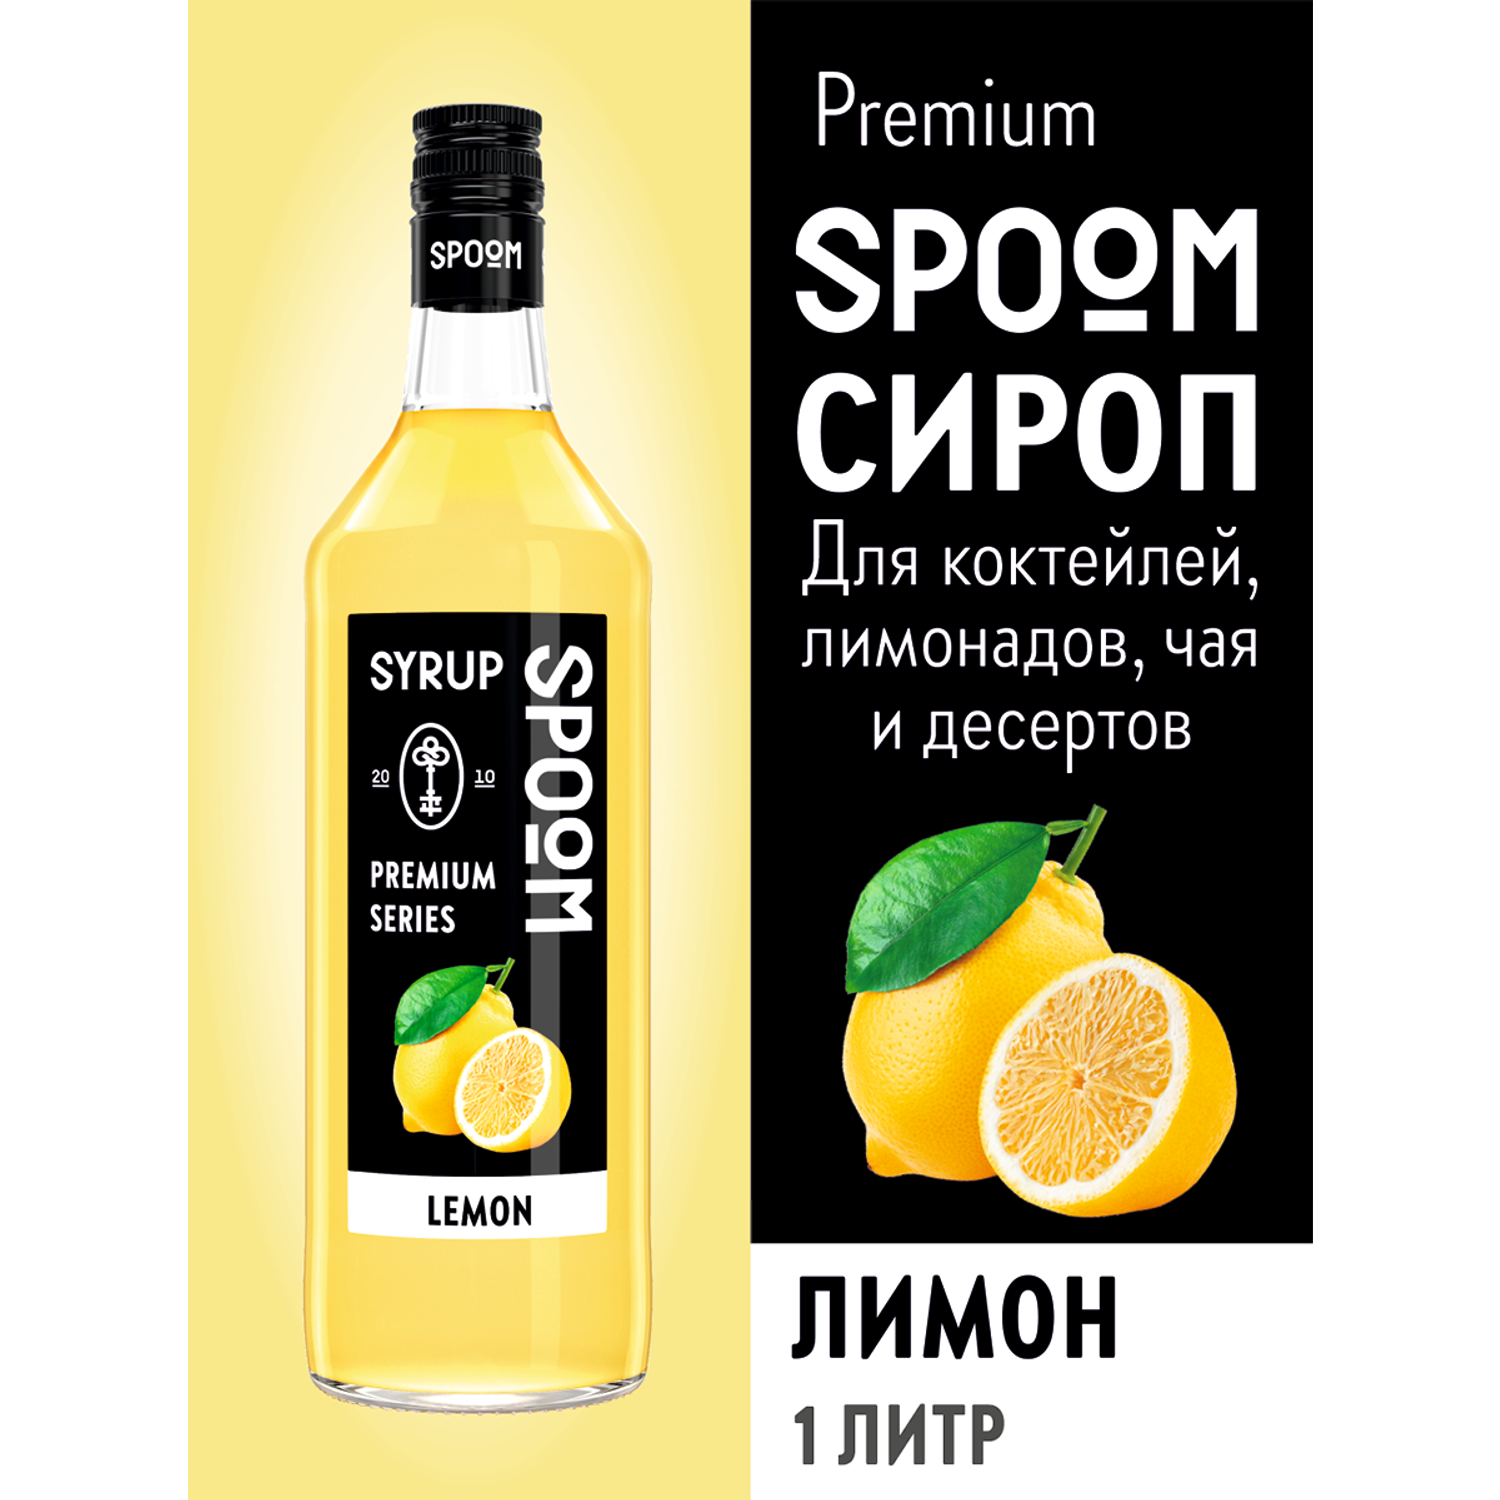 Сироп SPOOM Лимон 1л для коктейлей лимонадов и десертов - фото 1